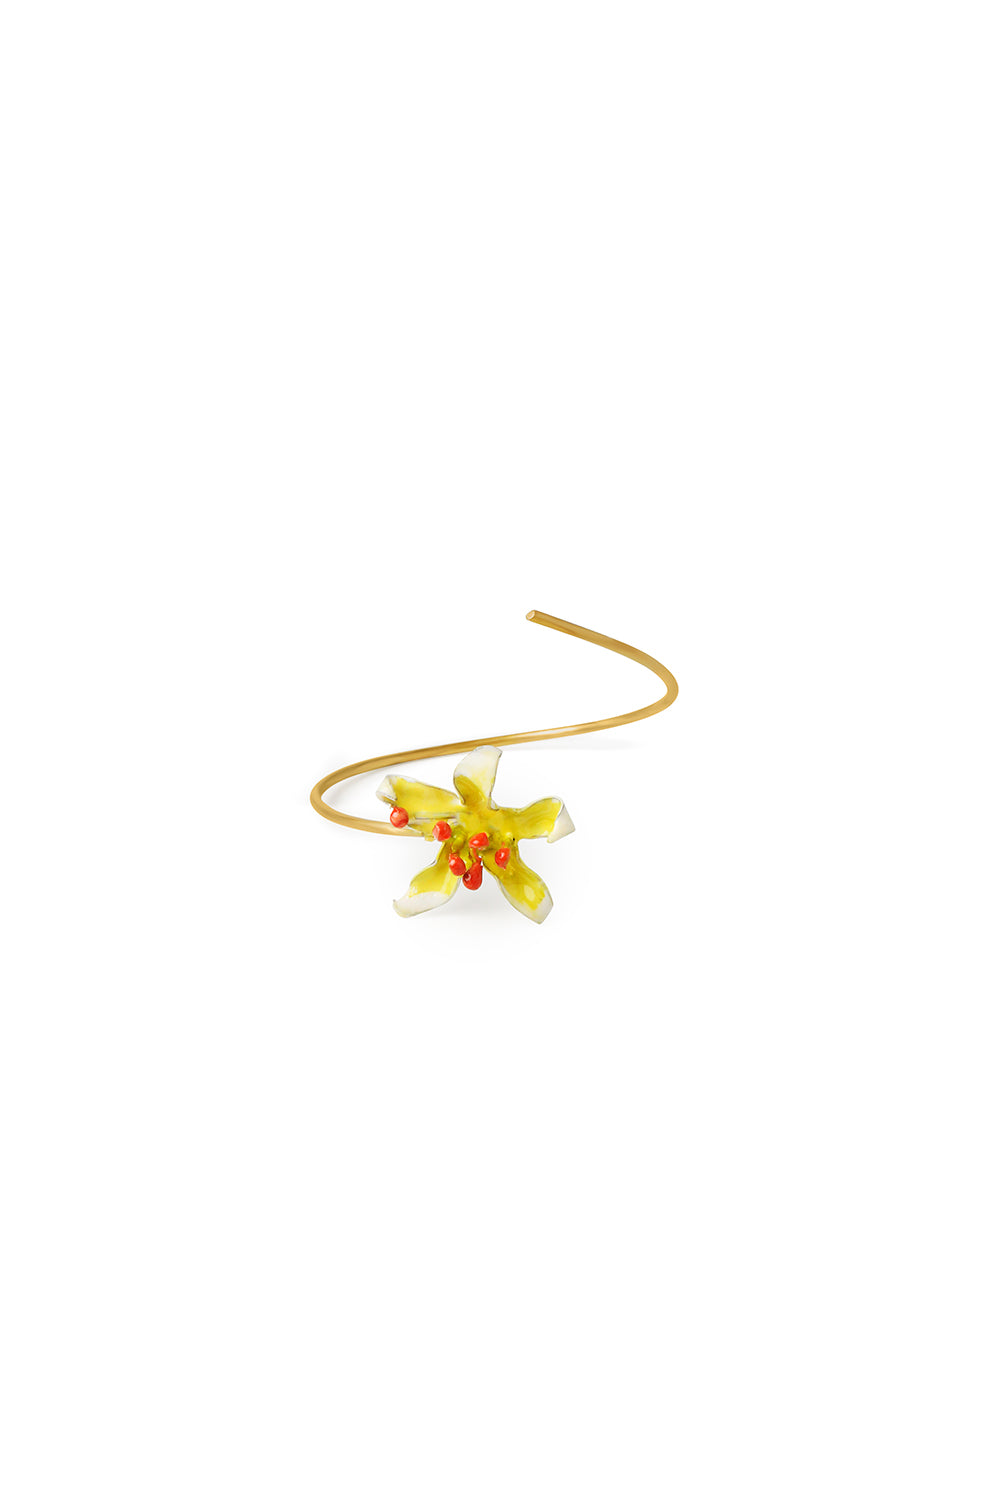 Pulsera pequeña Flores dorado mate baño en oro 24ct